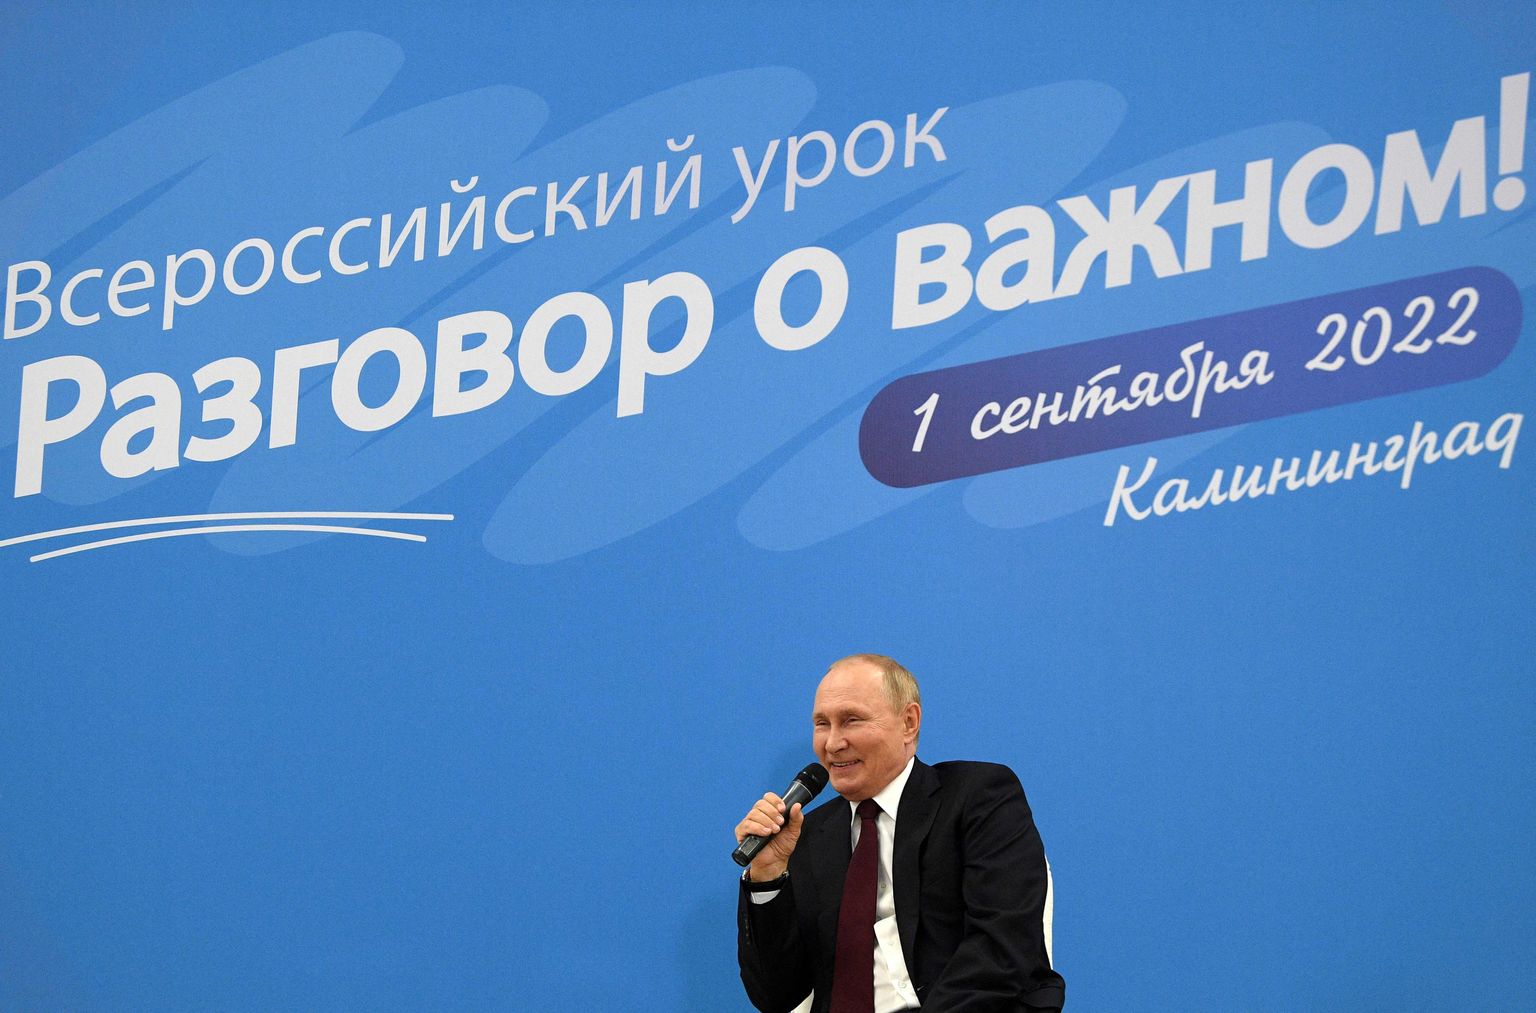 Putin andmas avatud tundi Kaliningradis 1. septembril 2022.